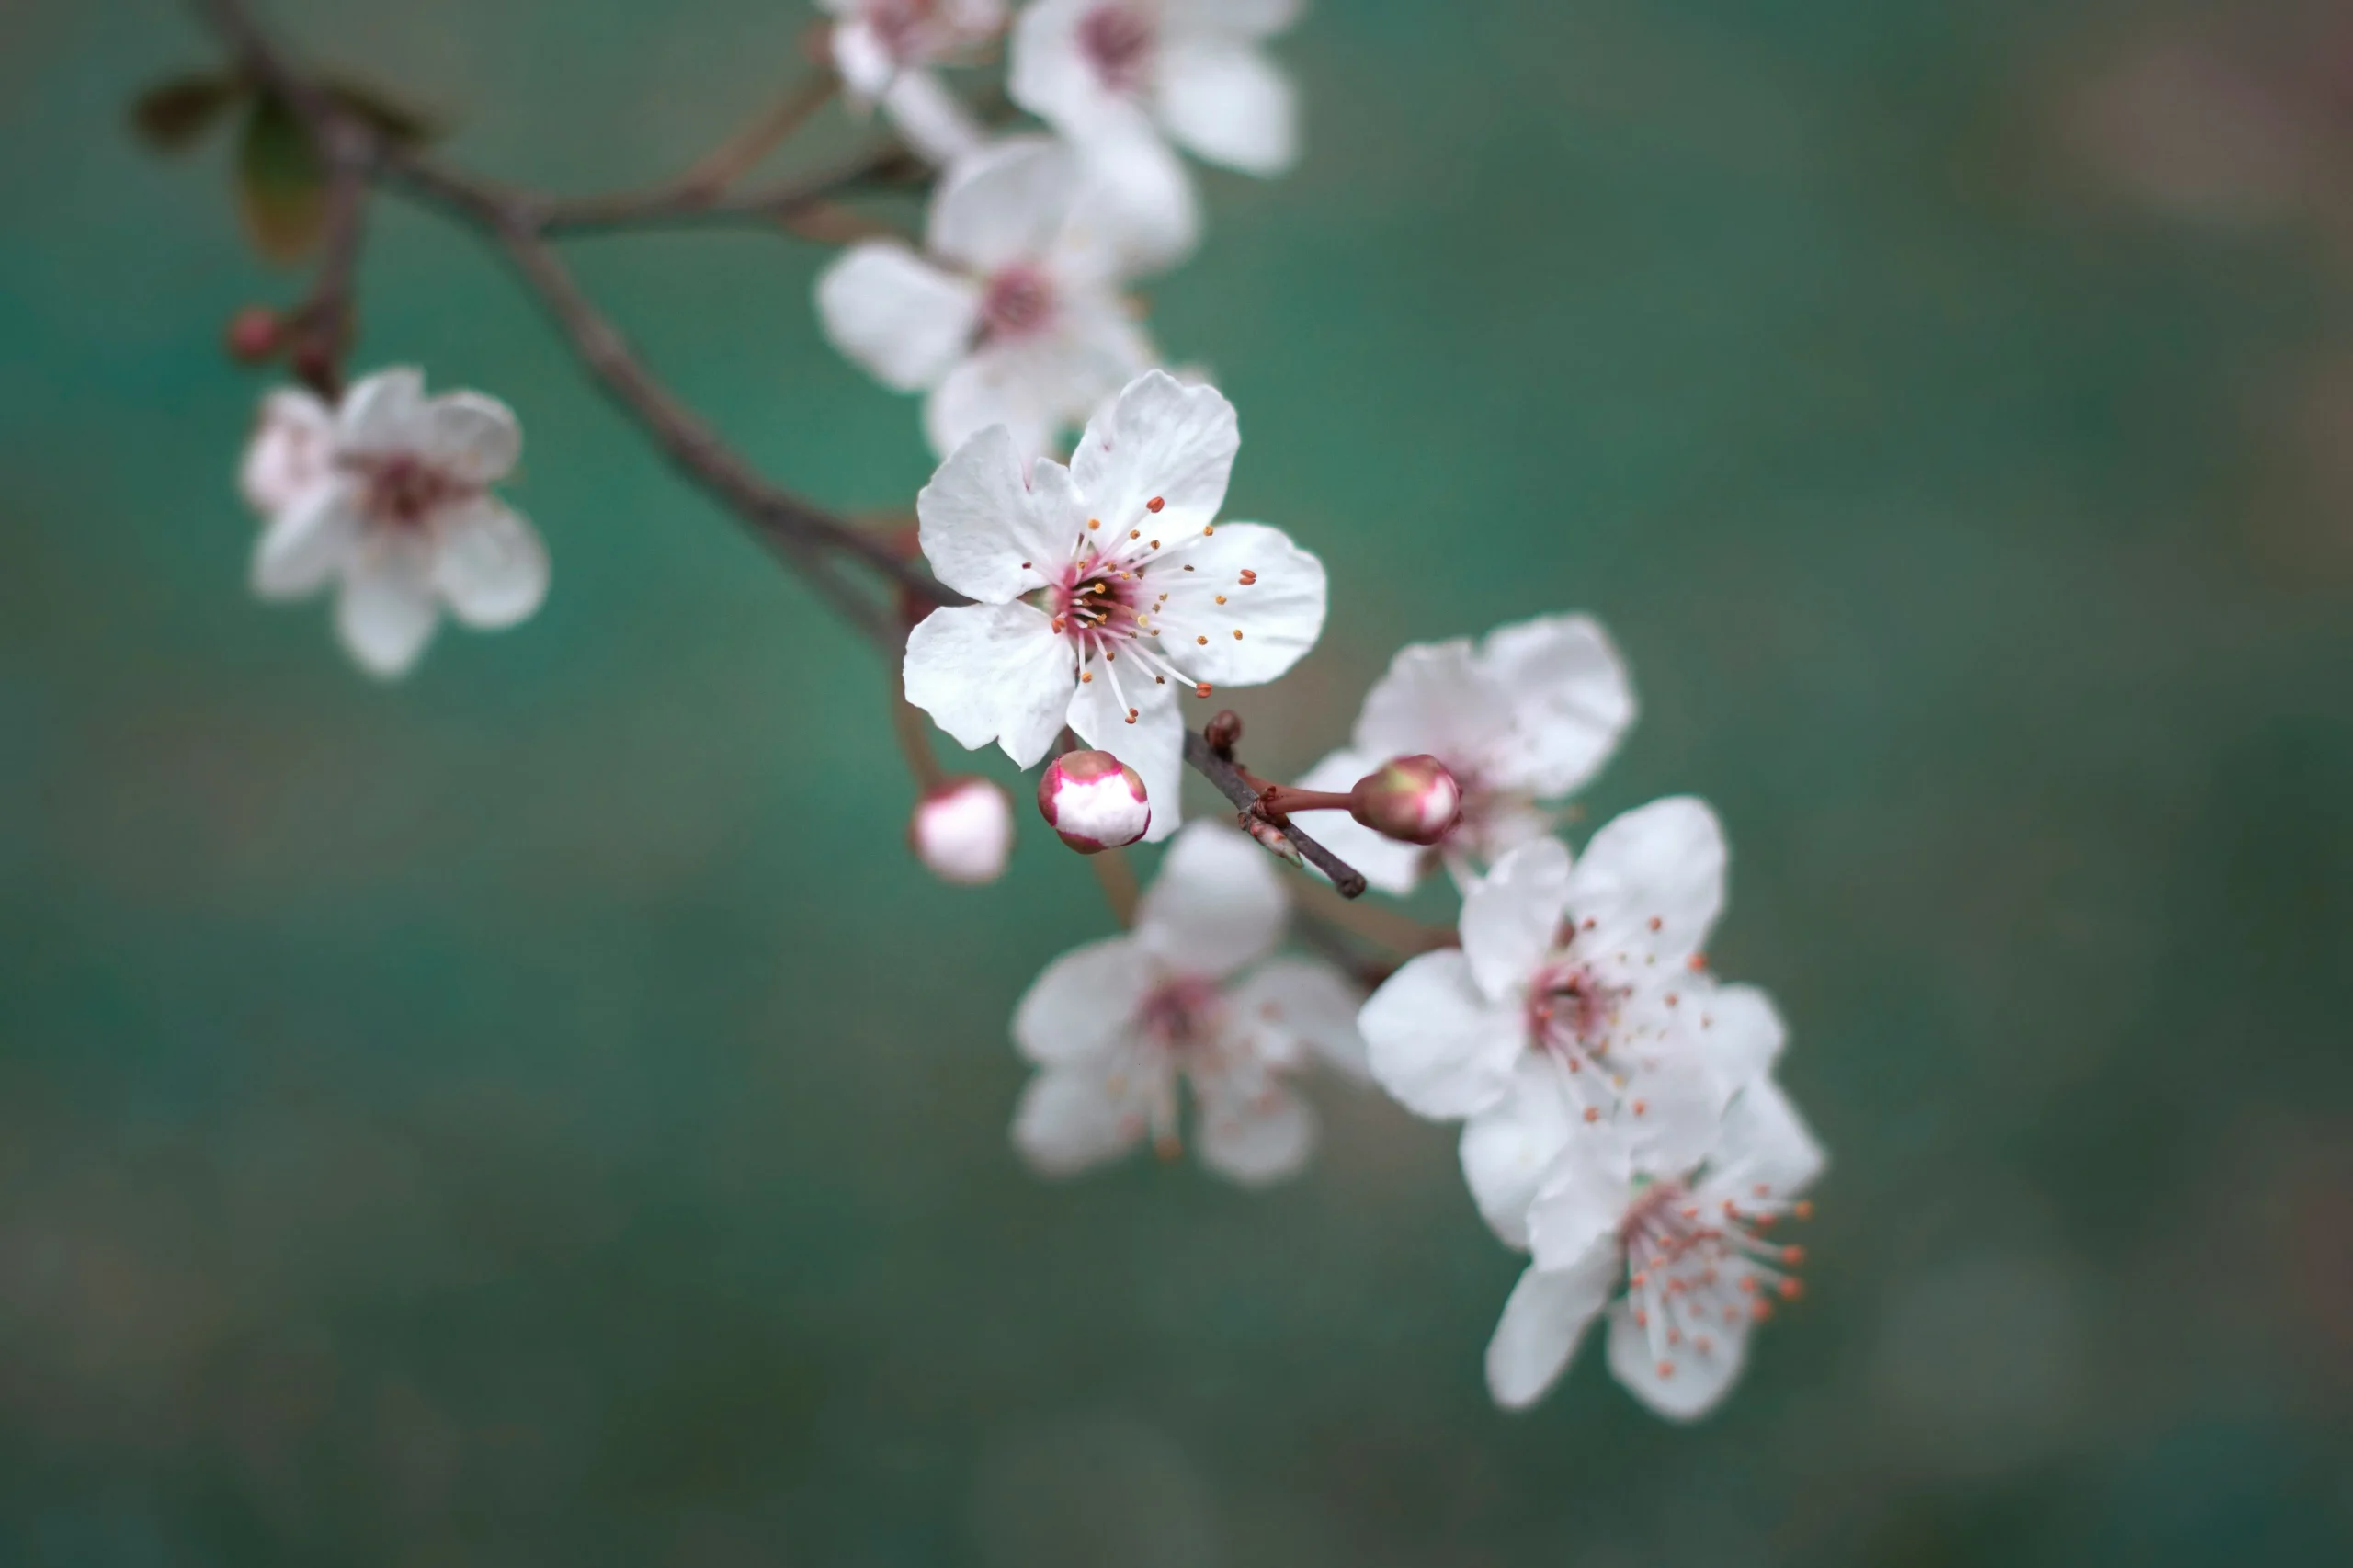 桜の開花日の基準になるのが、標準木。気象庁の担当職員が、標準木に5、6輪咲いたときを観測し、開花日として発表